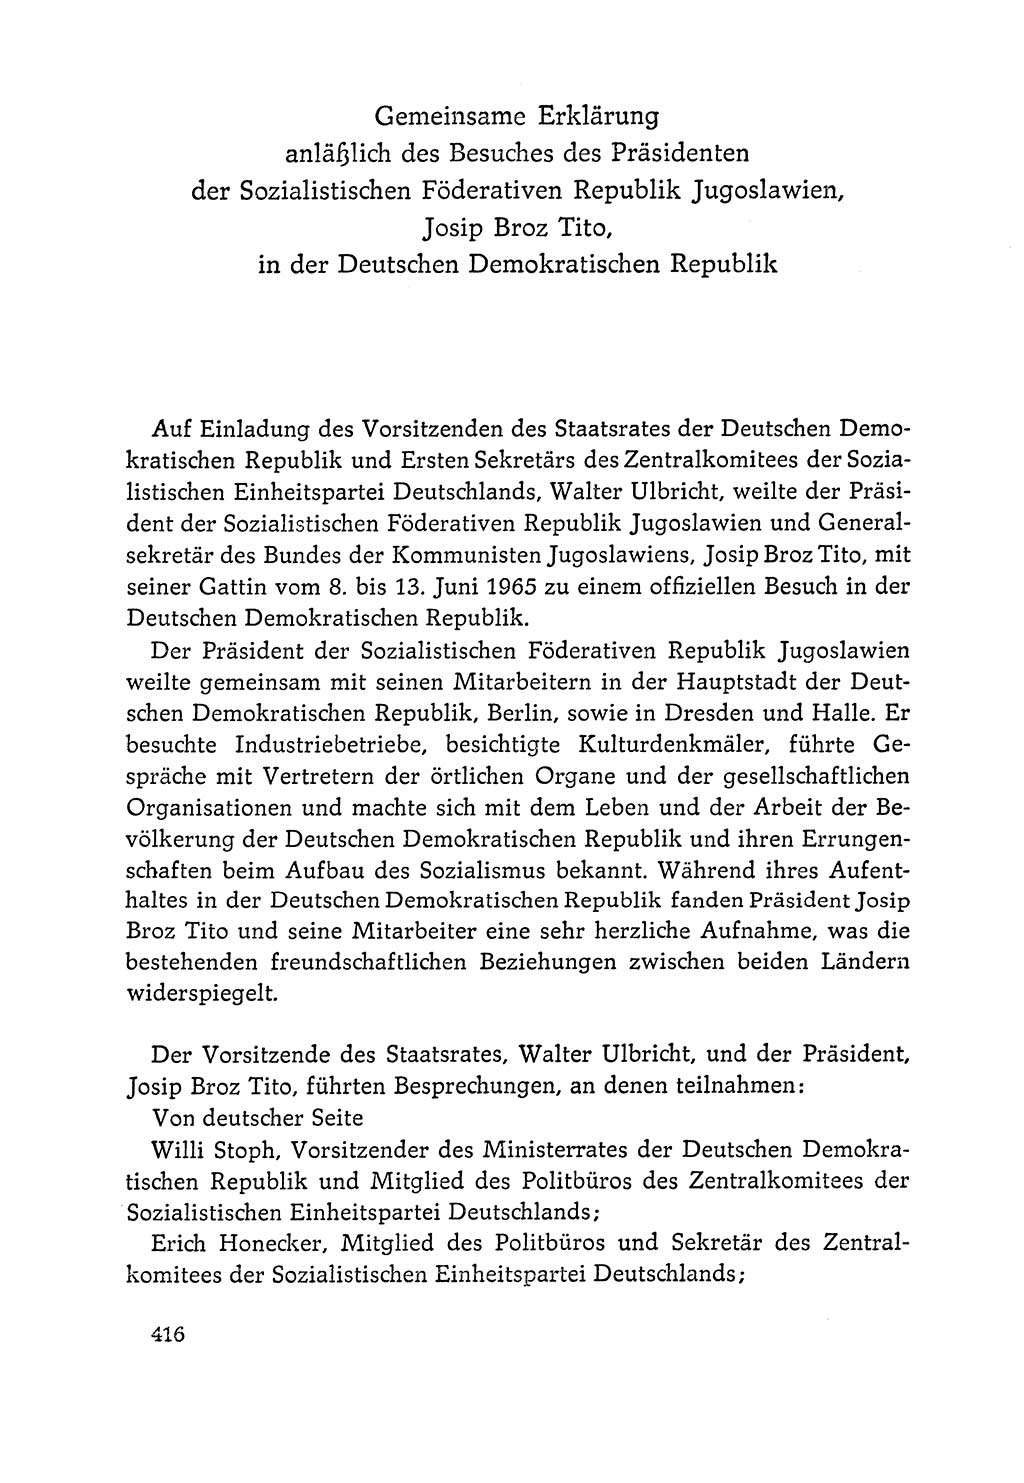 Dokumente der Sozialistischen Einheitspartei Deutschlands (SED) [Deutsche Demokratische Republik (DDR)] 1964-1965, Seite 416 (Dok. SED DDR 1964-1965, S. 416)